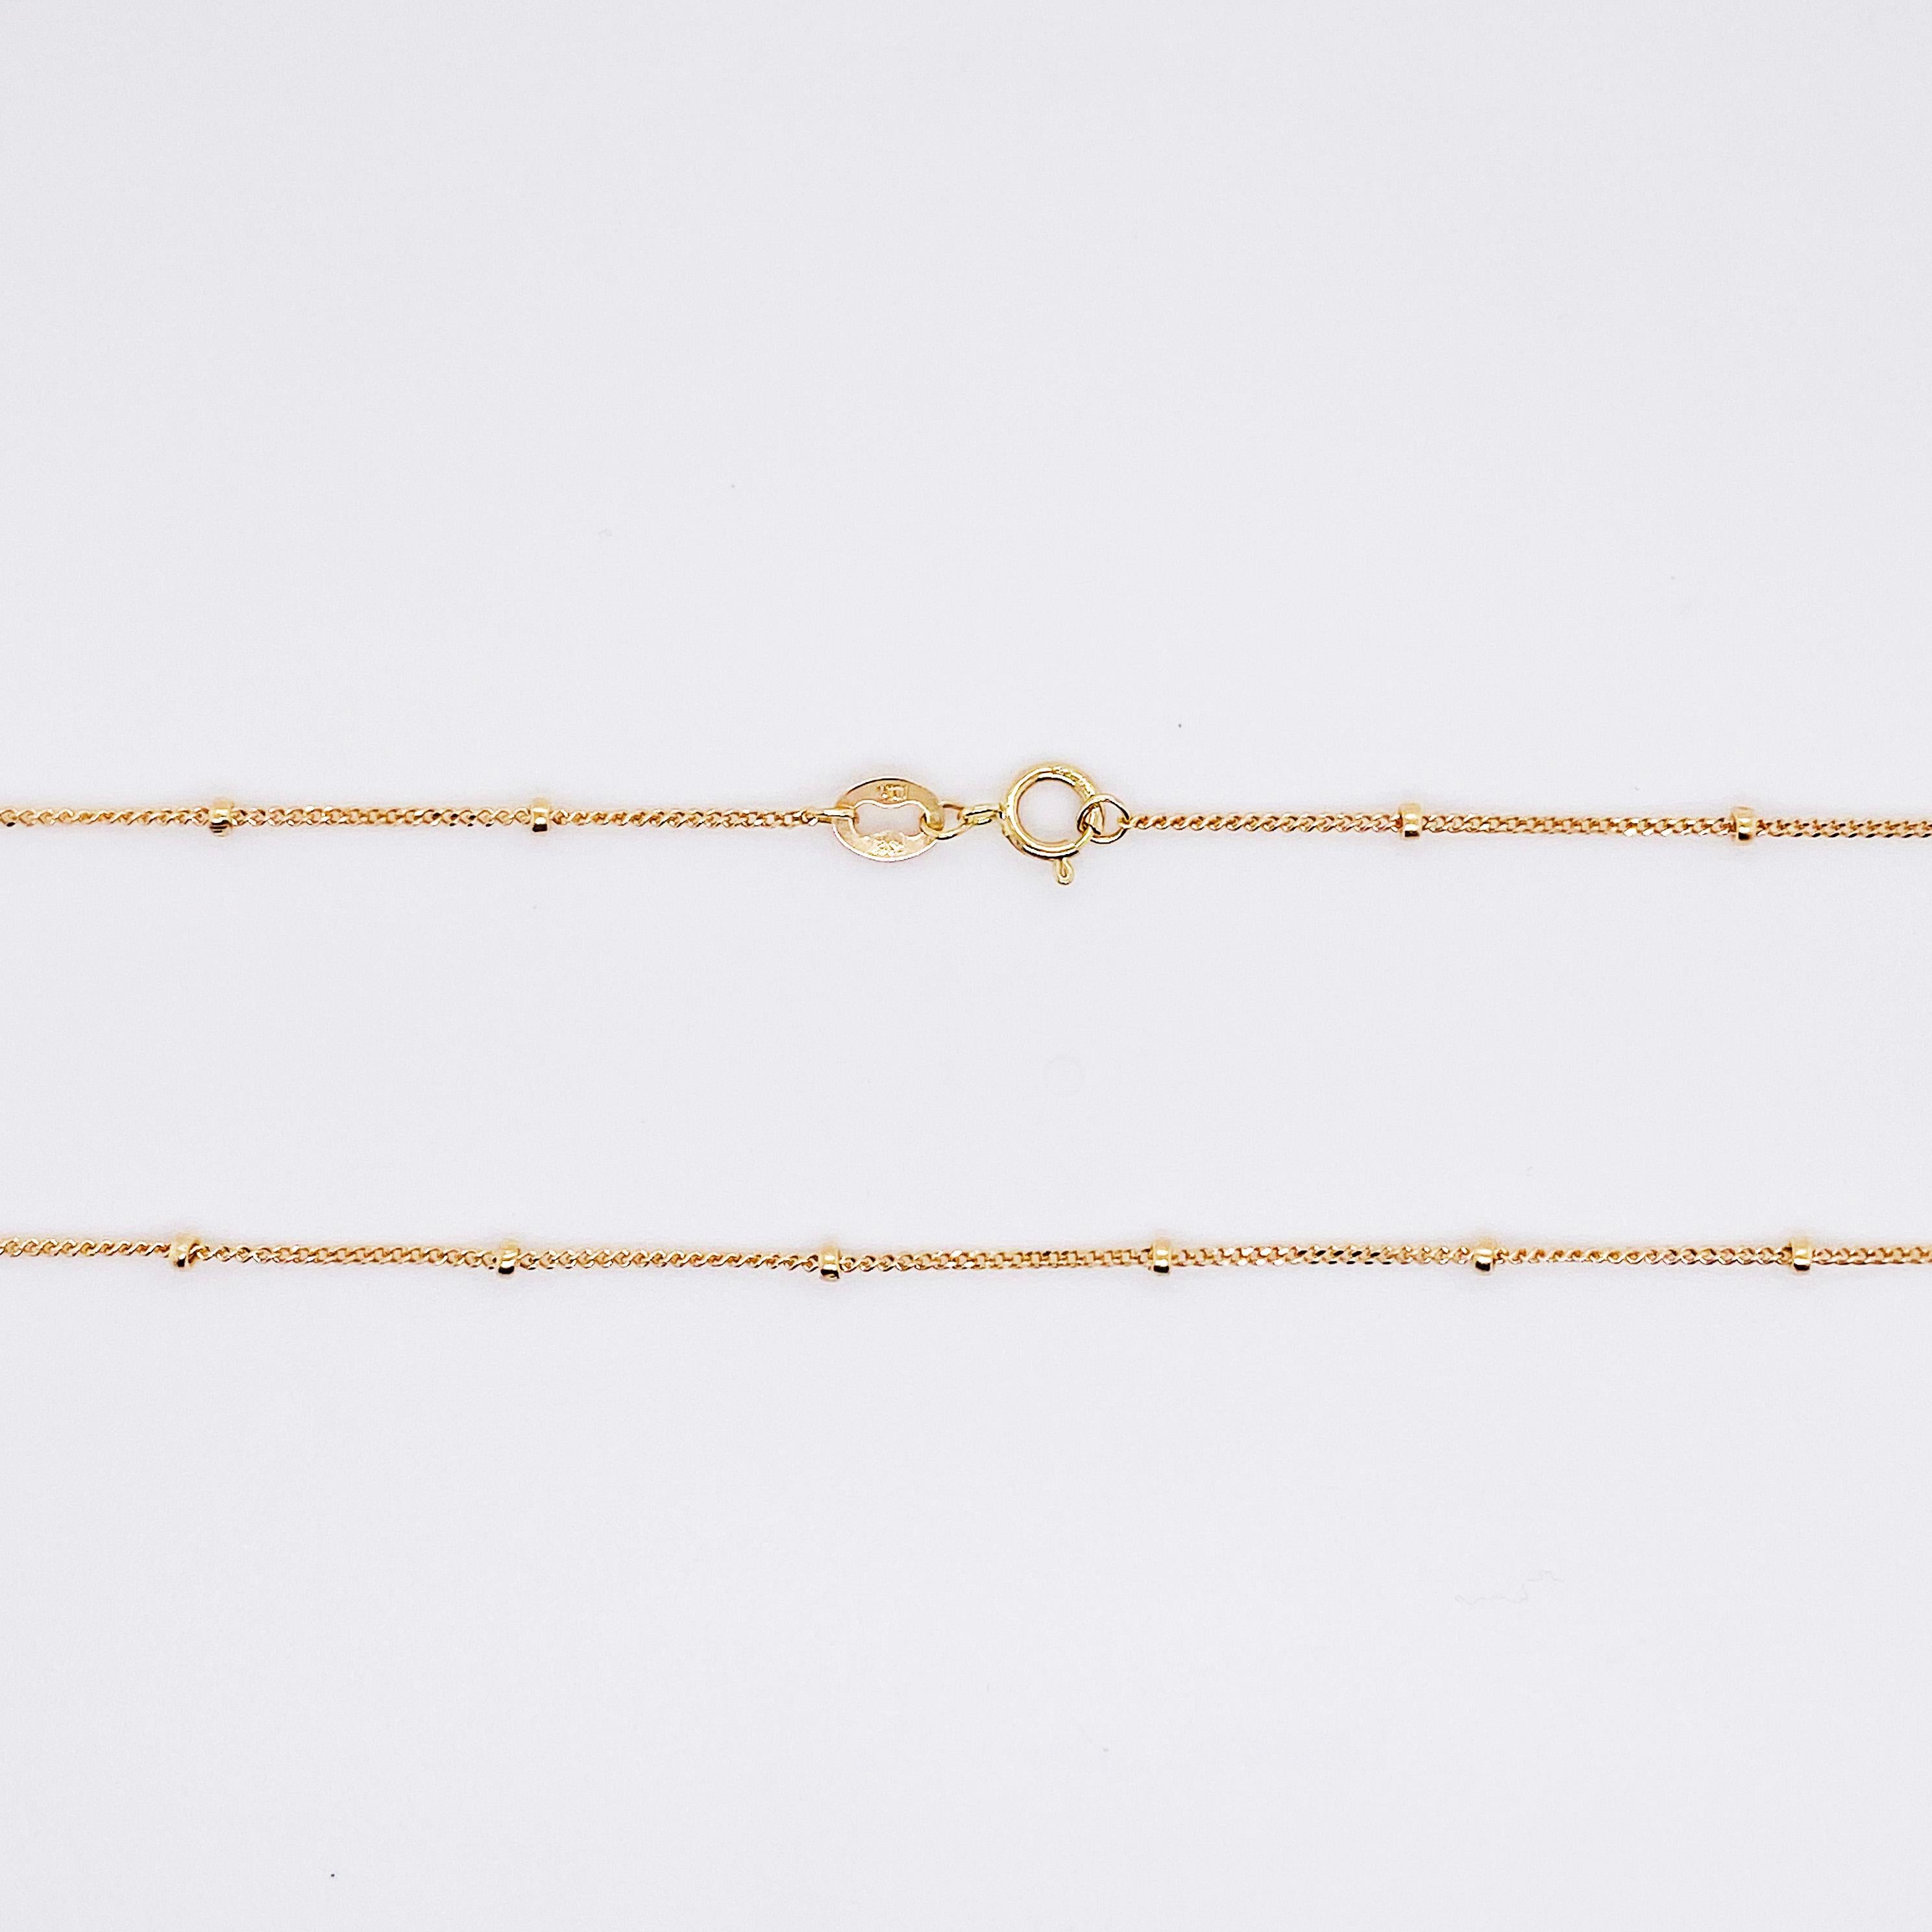 Dies ist unsere meistverkaufte 14-karätige Goldkette, weil sie so vielseitig ist und allein oder mit anderen Ketten getragen werden kann.  Jeder Zentimeter ist mit einer goldenen Perle versehen und die Kette dazwischen ist ein haltbares Kabel.  Die